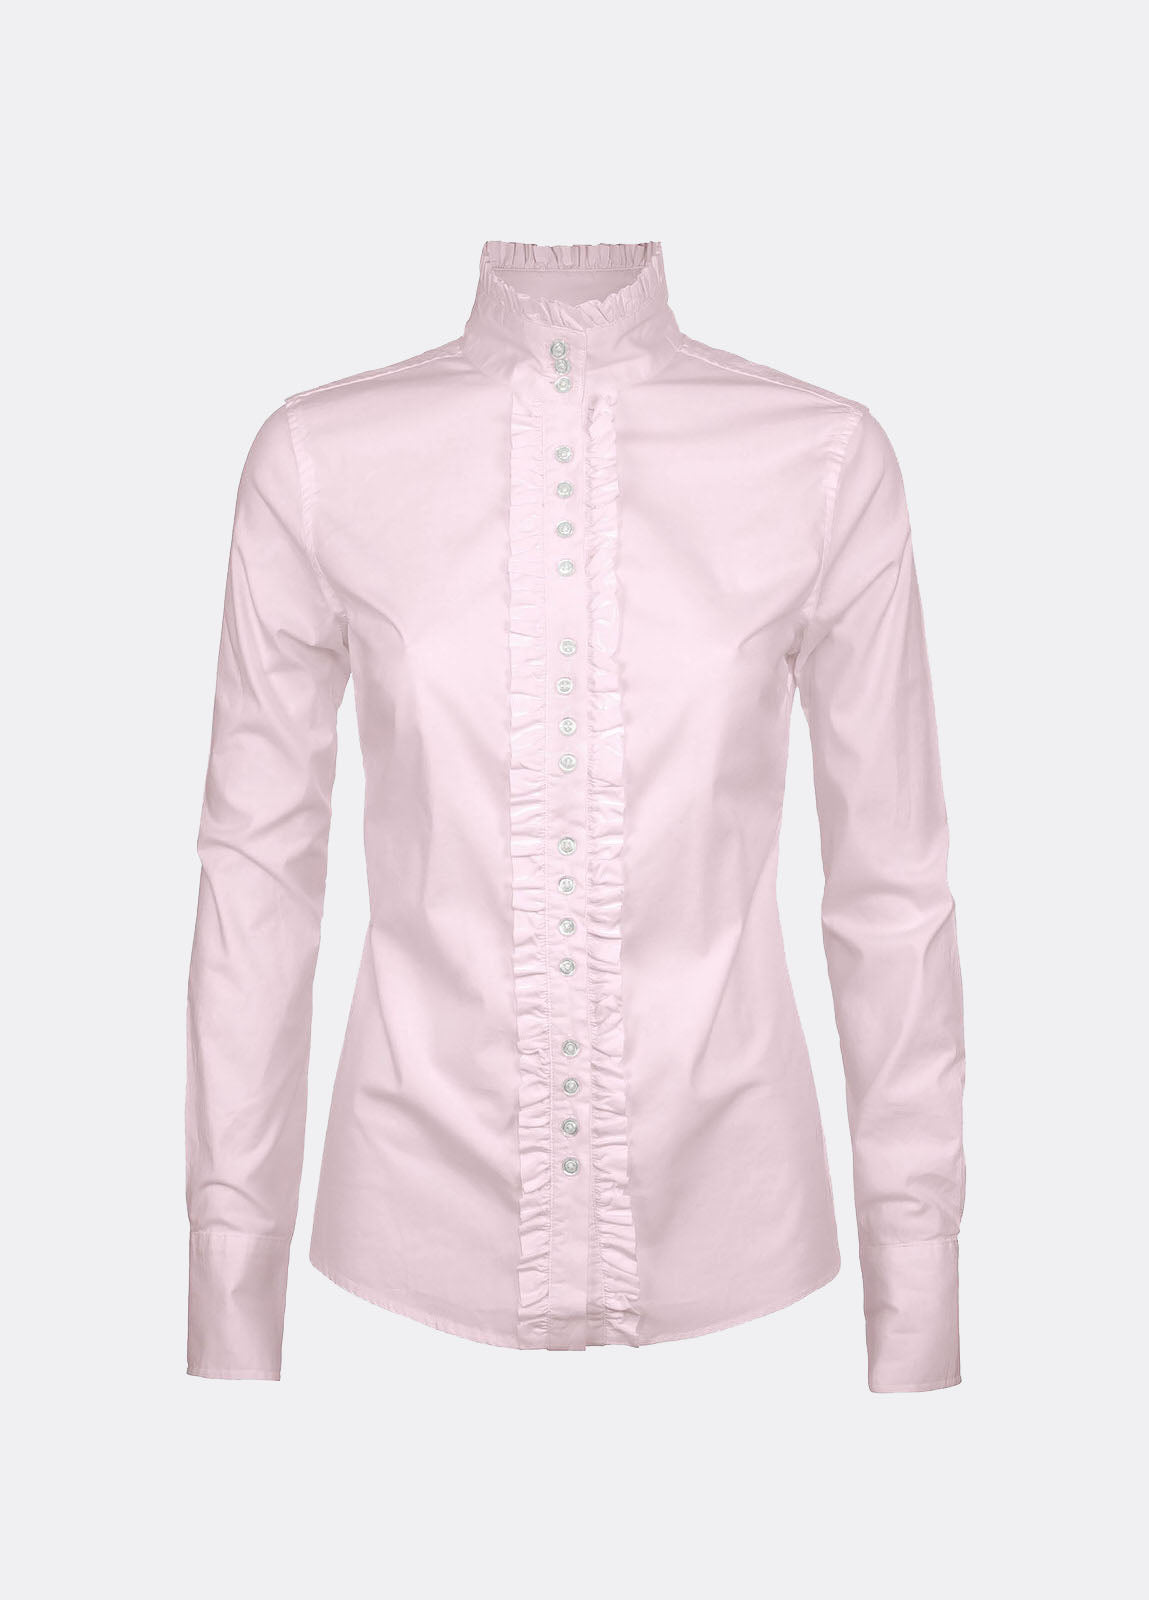 Chamomile Shirt - Pale Pink